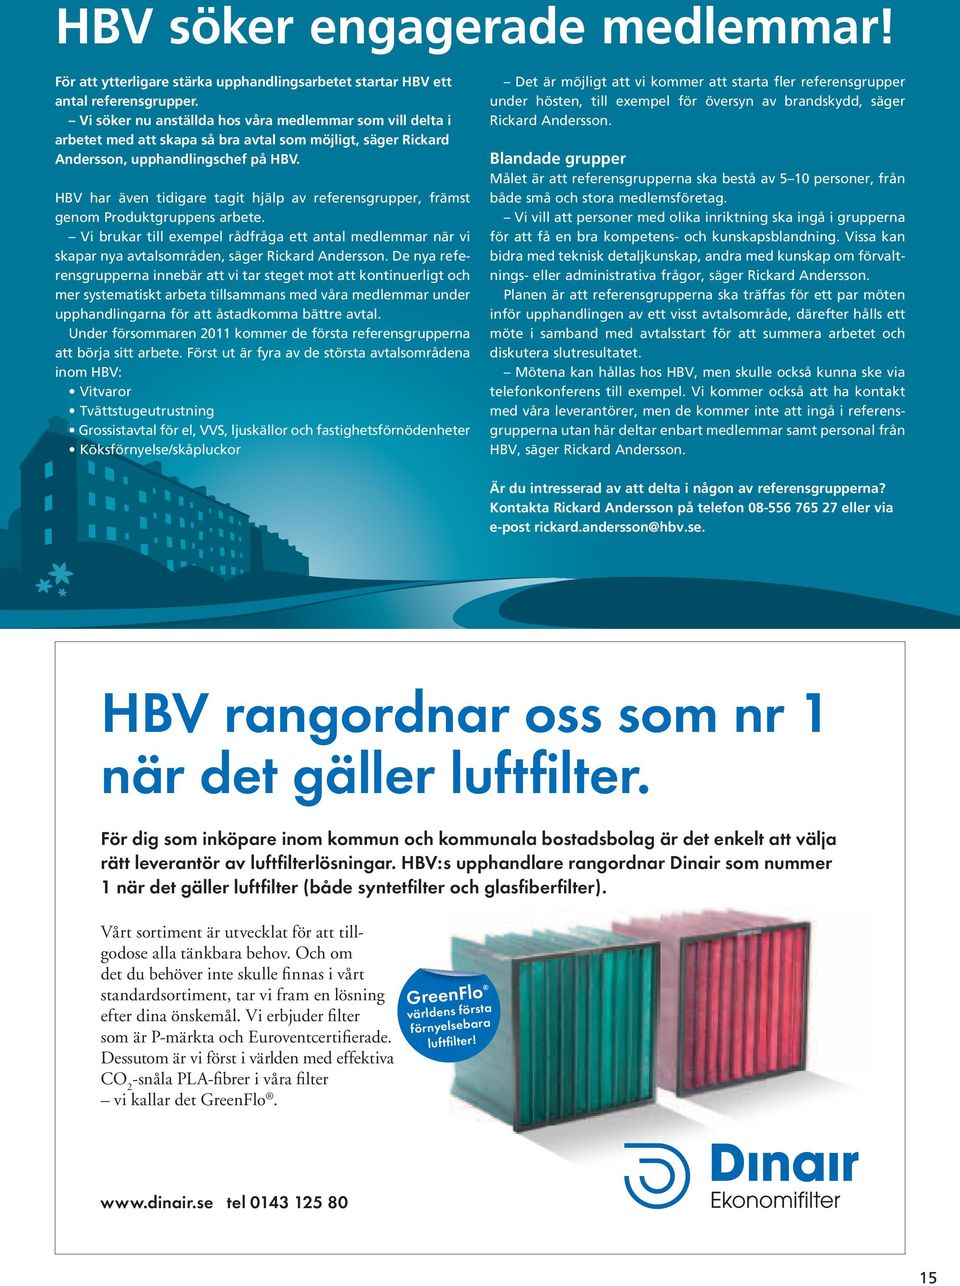 HBV har även tidigare tagit hjälp av referensgrupper, främst genom Produktgruppens arbete. Vi brukar till exempel rådfråga ett antal medlemmar när vi skapar nya avtalsområden, säger Rickard Andersson.